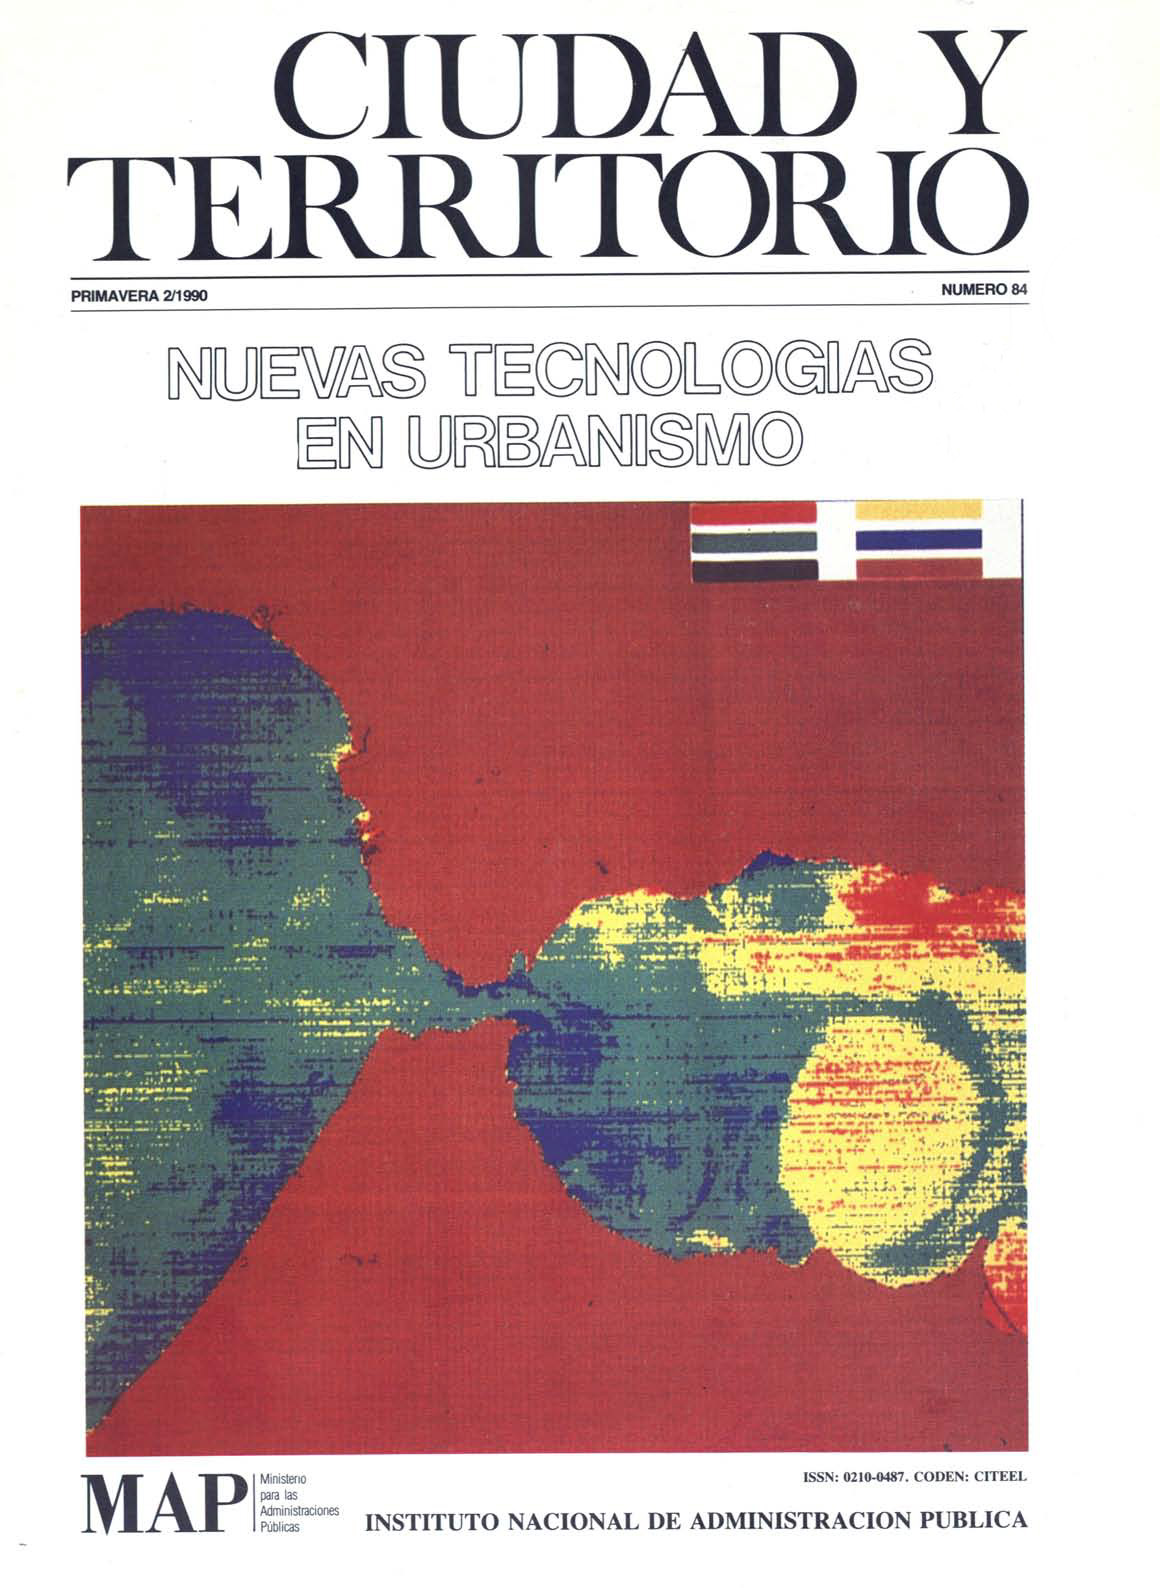 					Ver Ciudad y Territorio. Ciencia Urbana. Núm. 84 (1990)
				